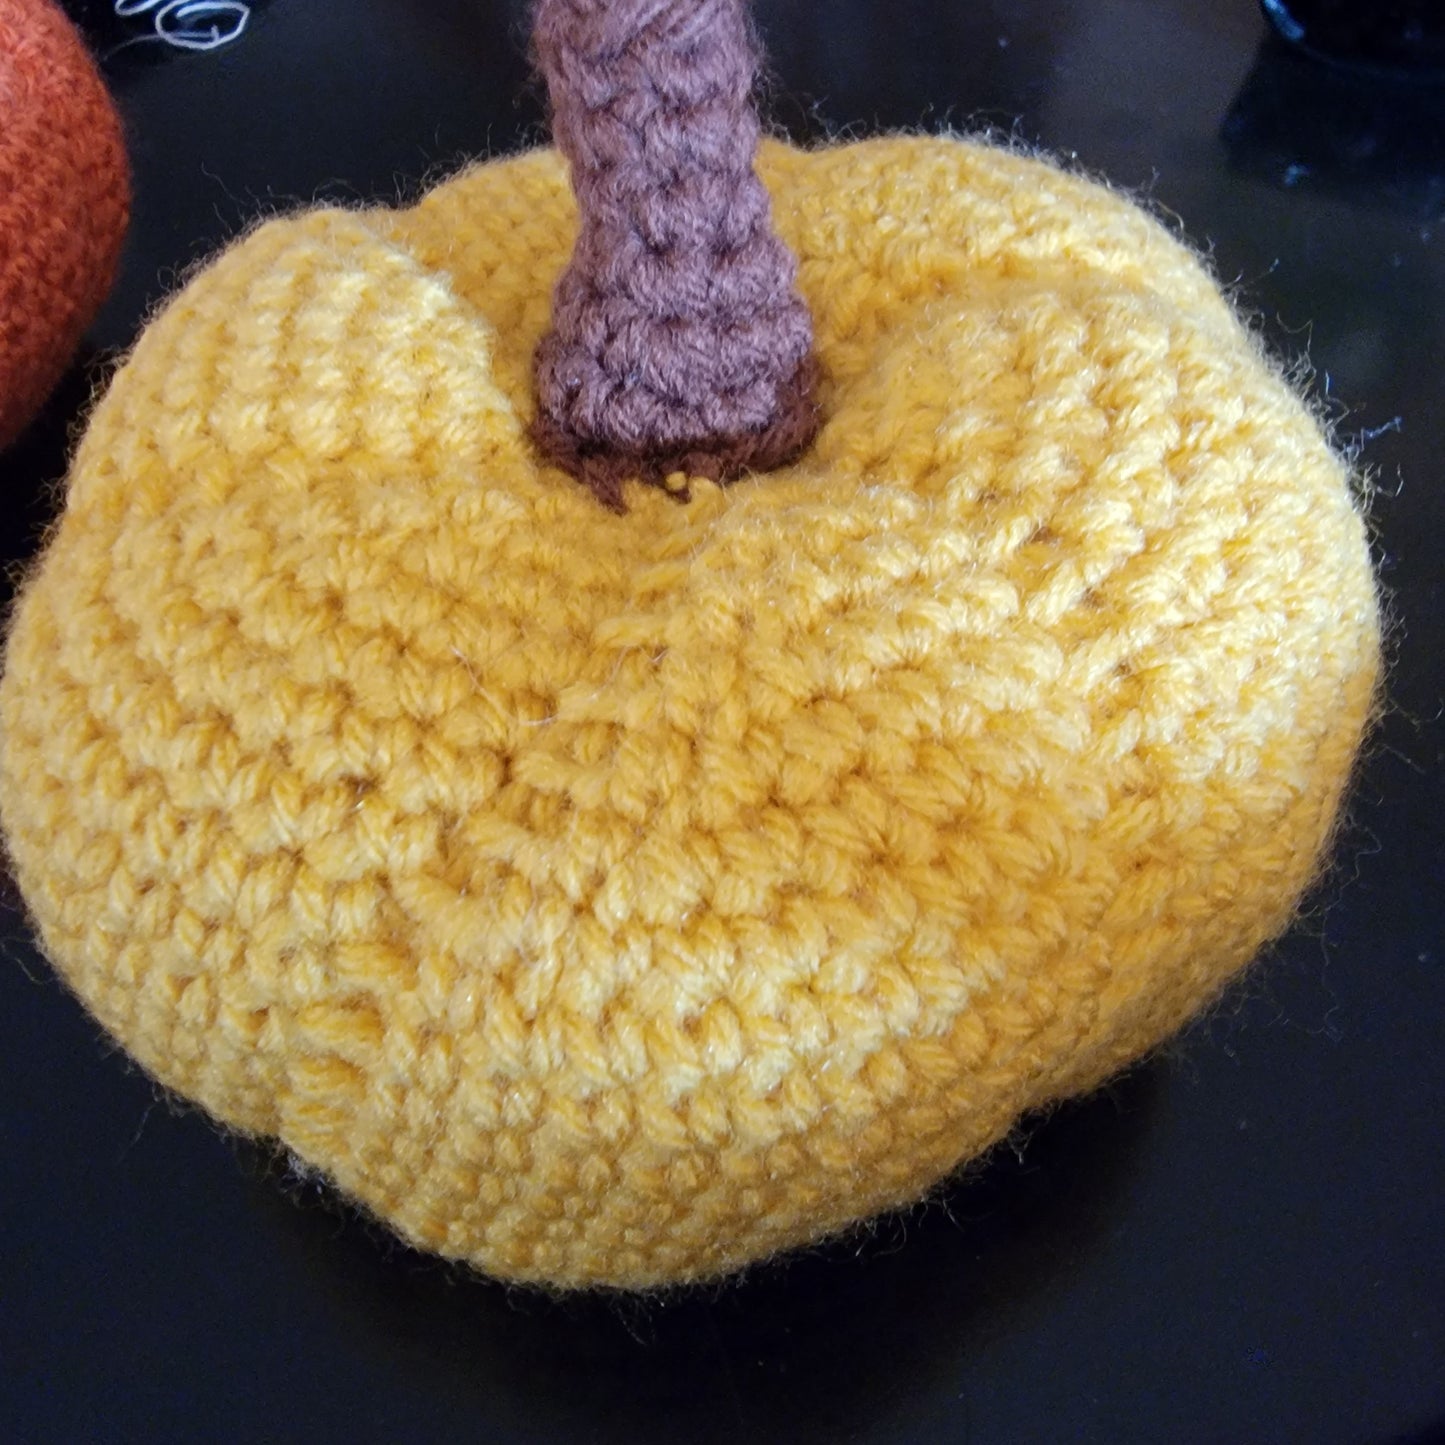 Crochet Rustic Farmhouse Pumpkins